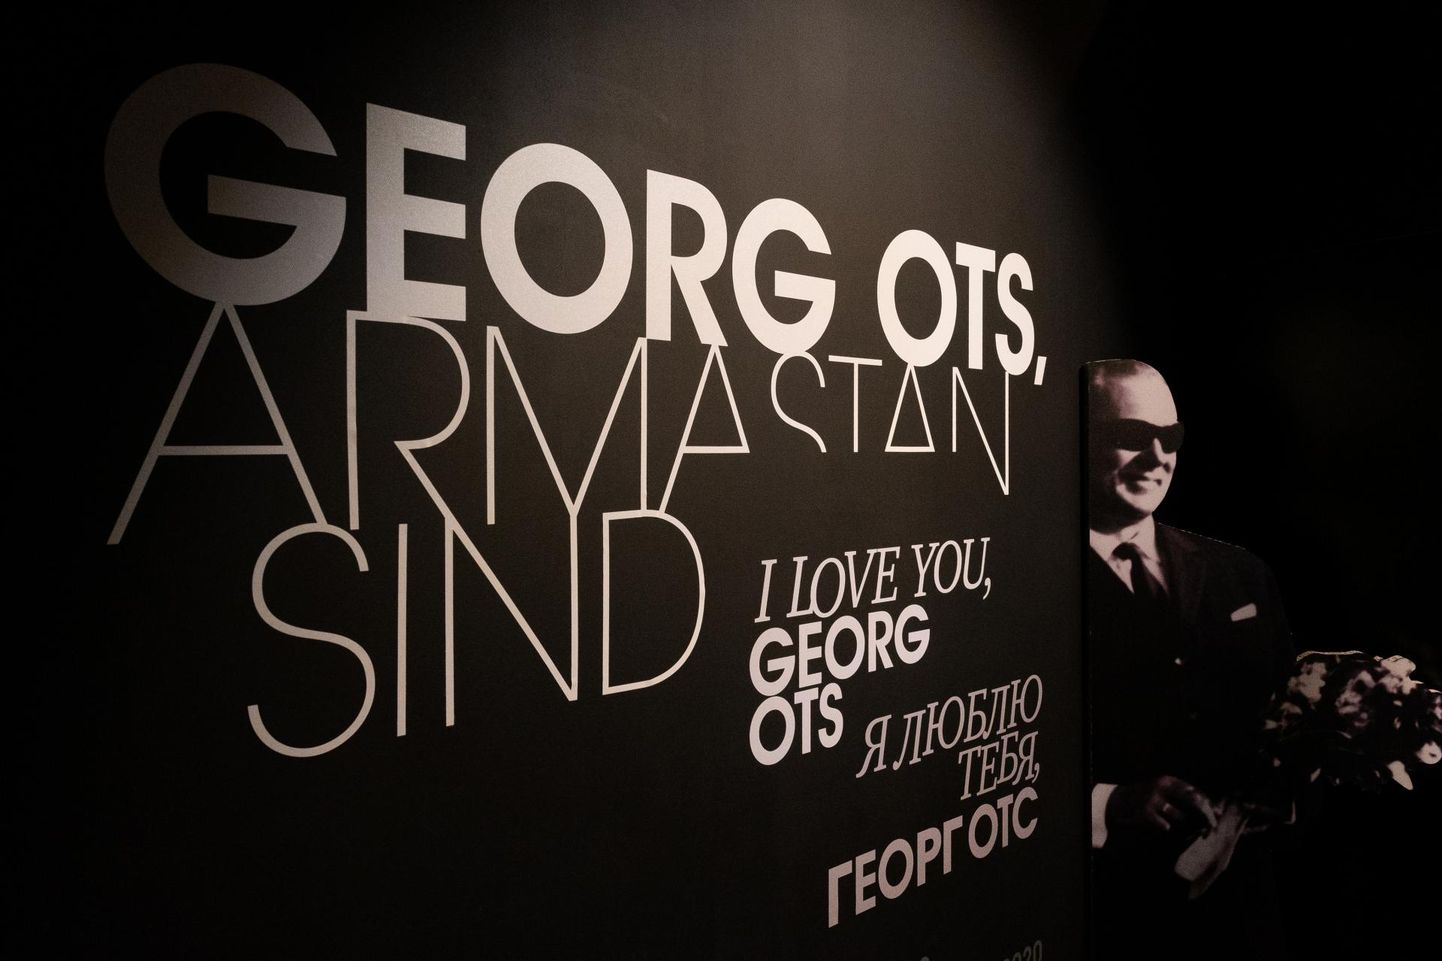 Kuni järgmise aasta maini on Suurgildi hoones avatud näitus "Georg Ots, armastan sind!".